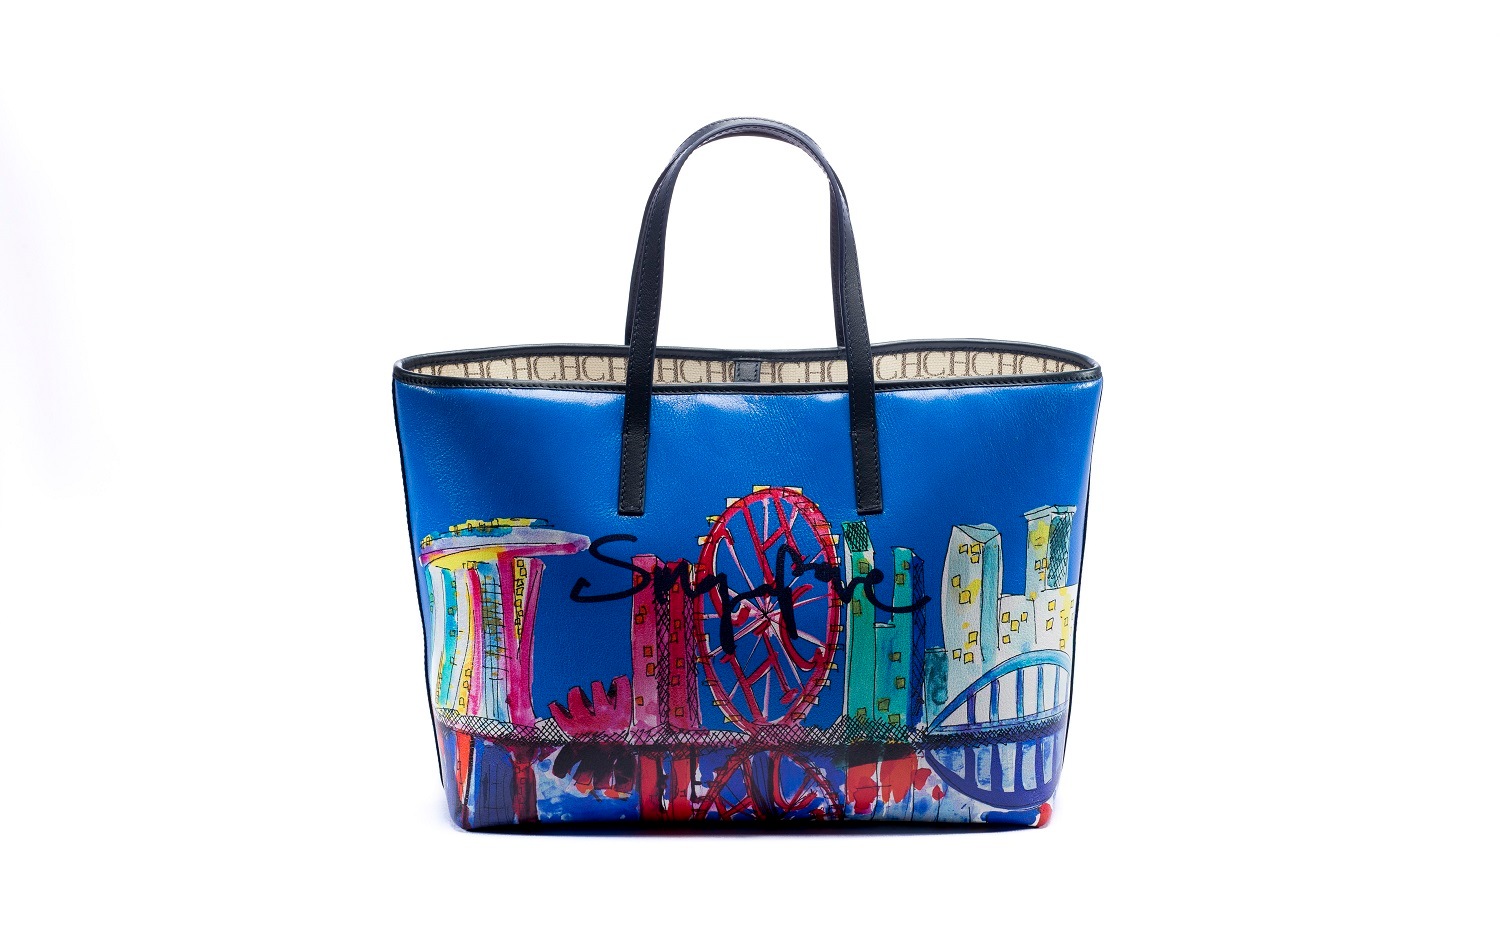 CH Carolina Herrera: Singapore Special Edition Shopping Bag